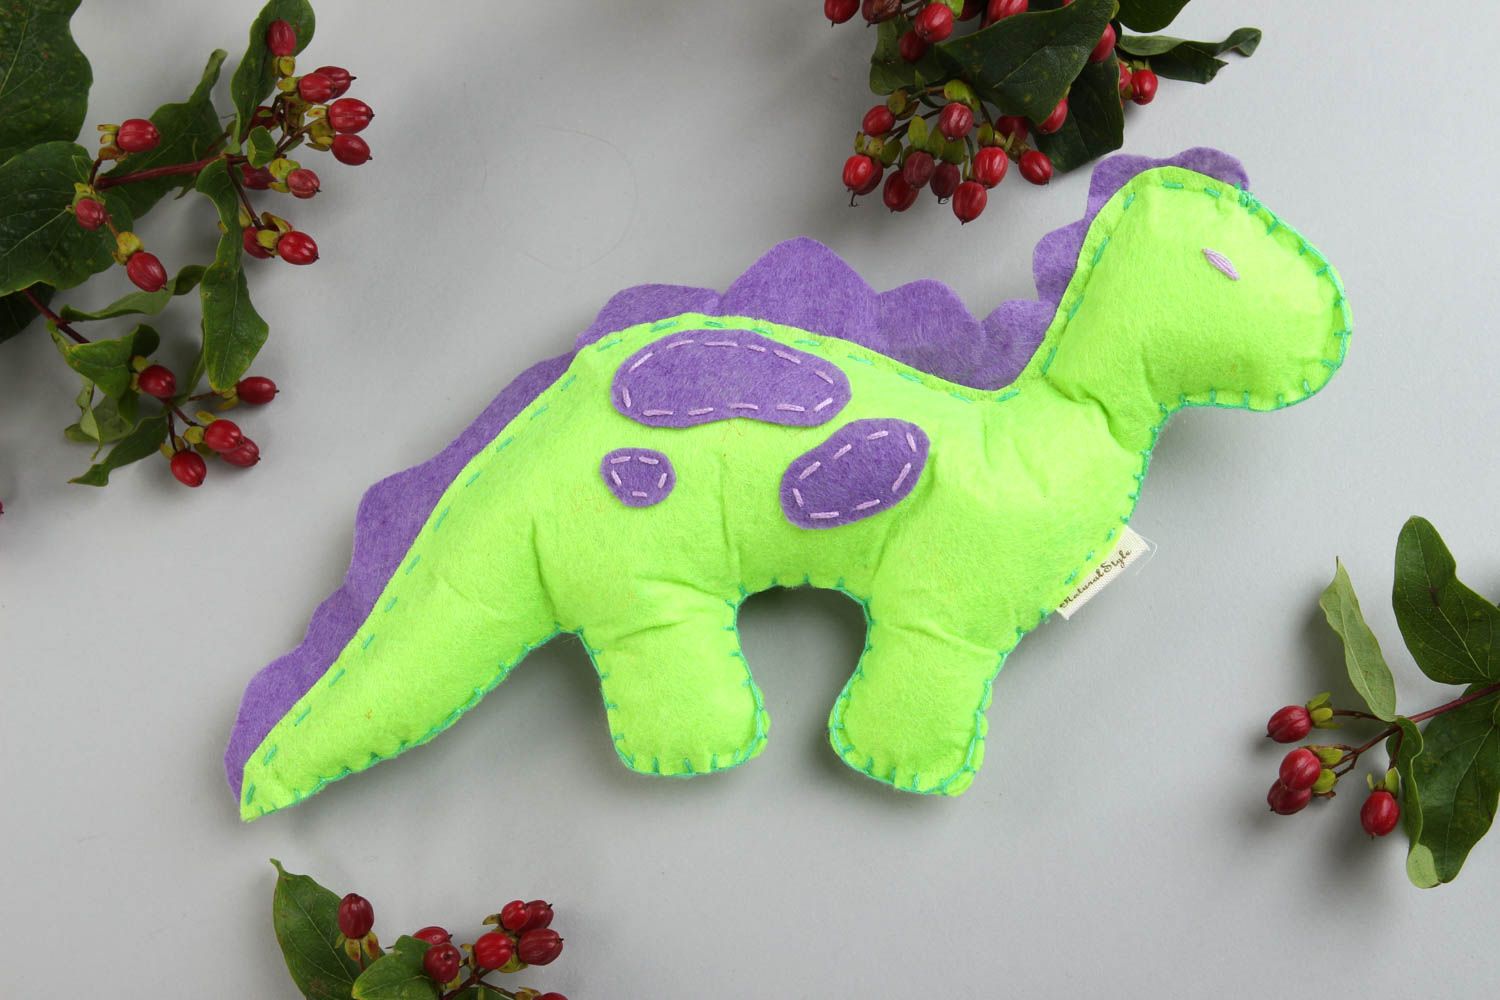 Handmade kleines Spielzeug Geschenk Idee Kuscheltier Dino Filz Tier grün foto 1